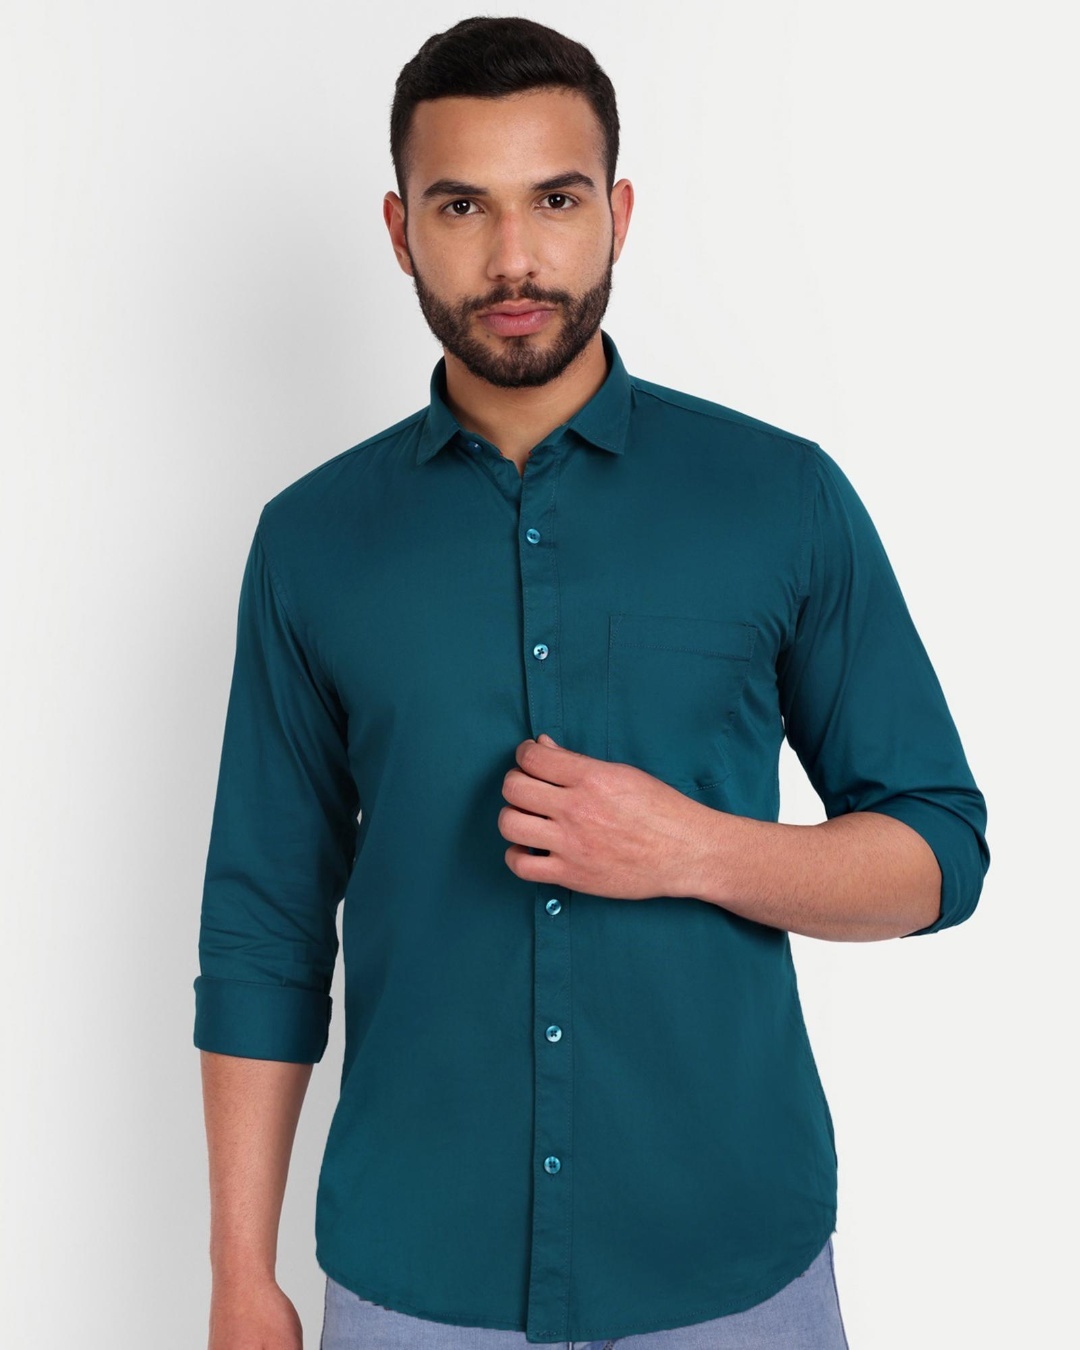 Buy Men's Turquoise Slim Fit Shirt Online at Bewakoof